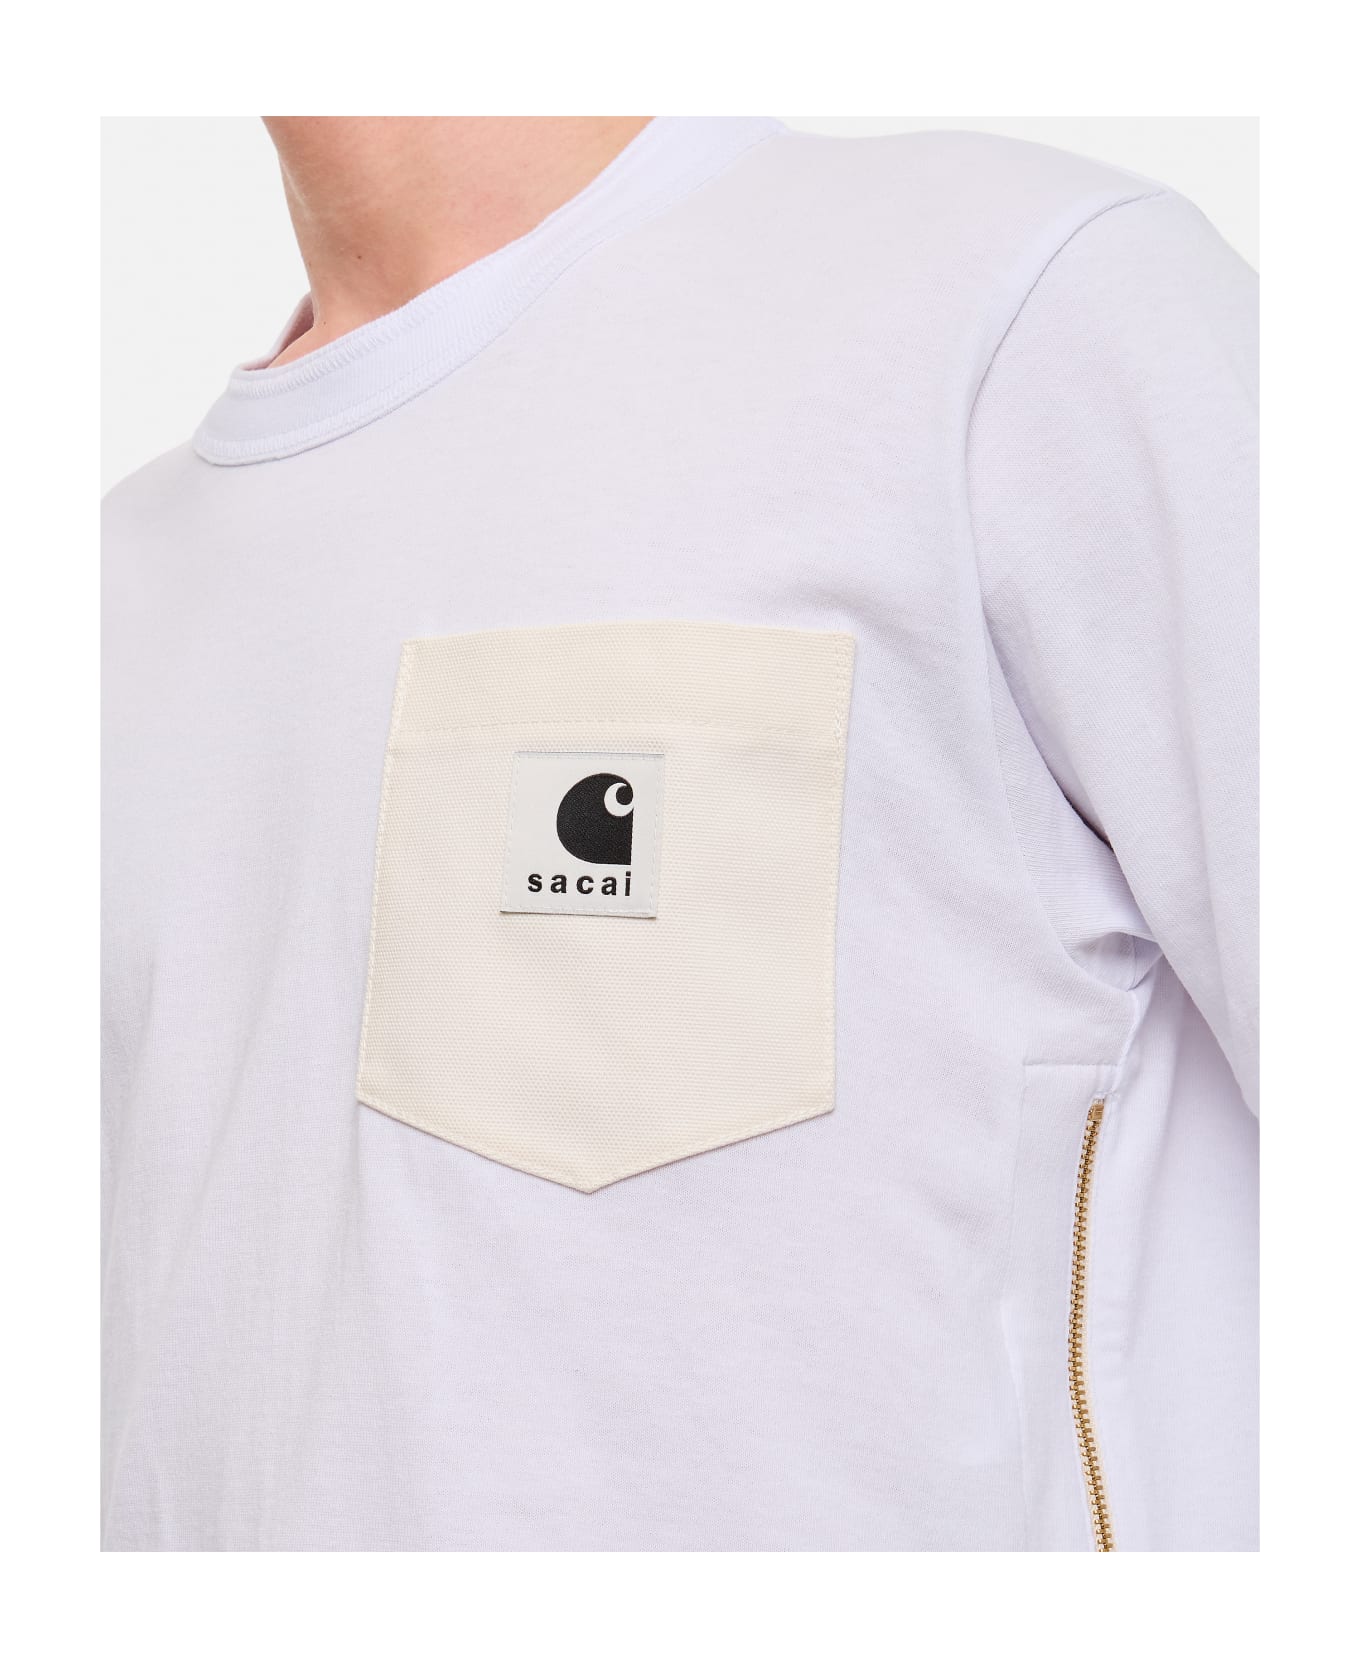 Sacai X Carhartt Wip L/s Cotton T-shirt - White